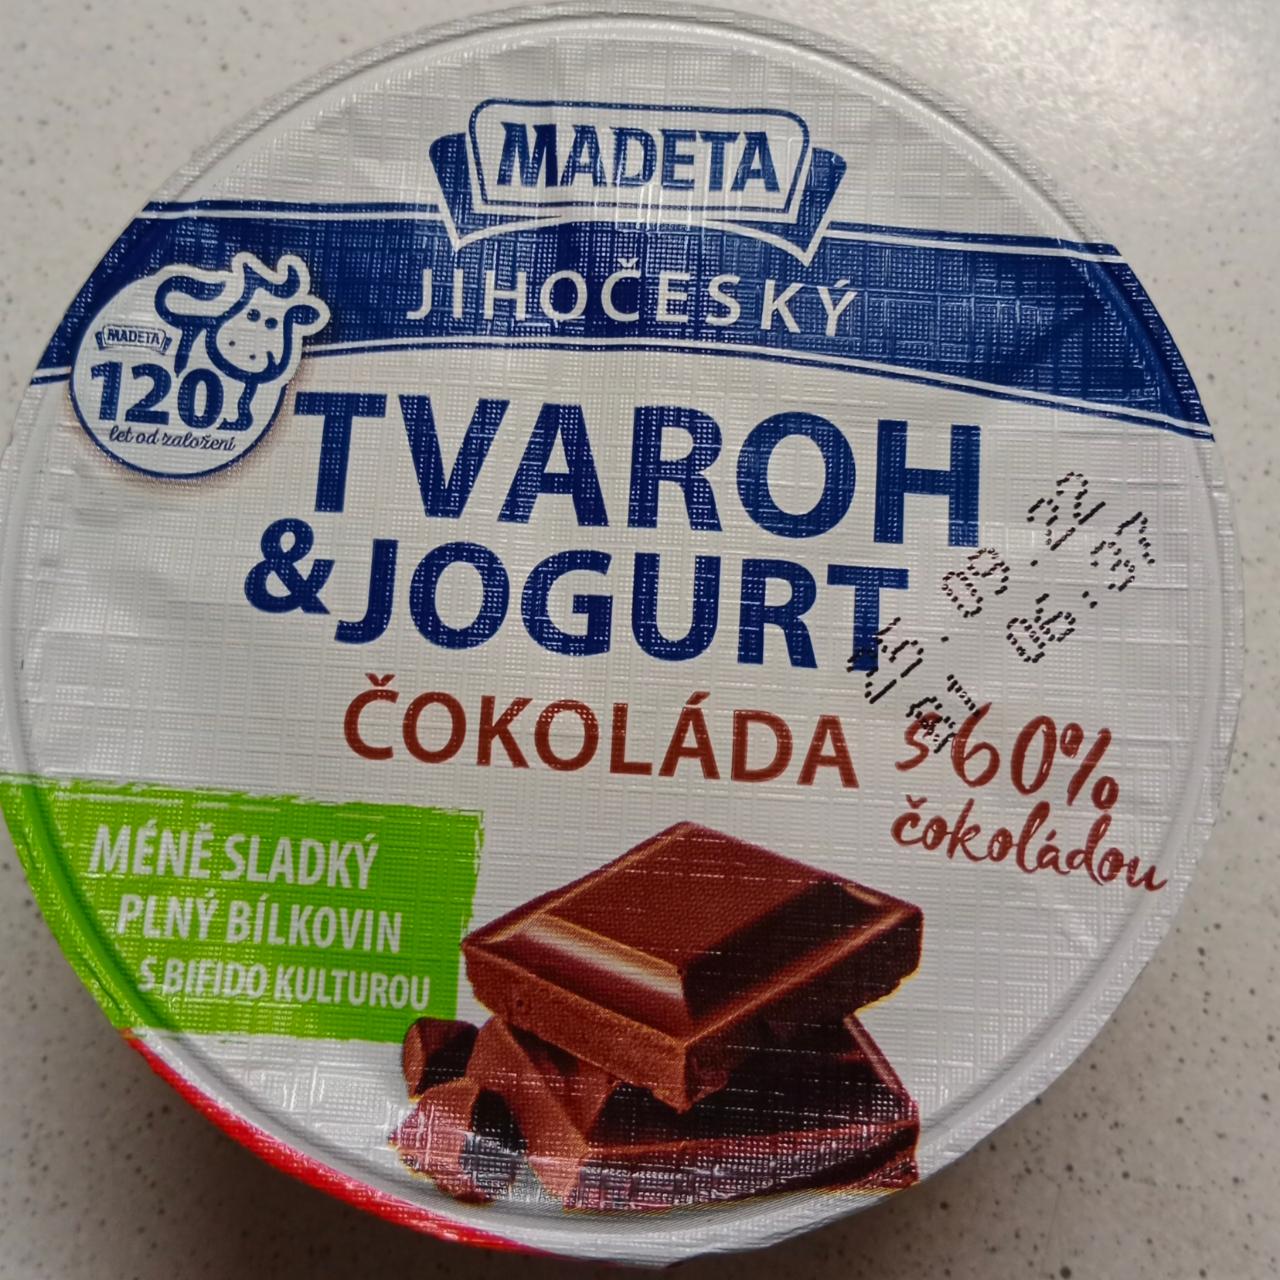 Fotografie - Jihočeský Tvaroh & jogurt čokoláda Madeta